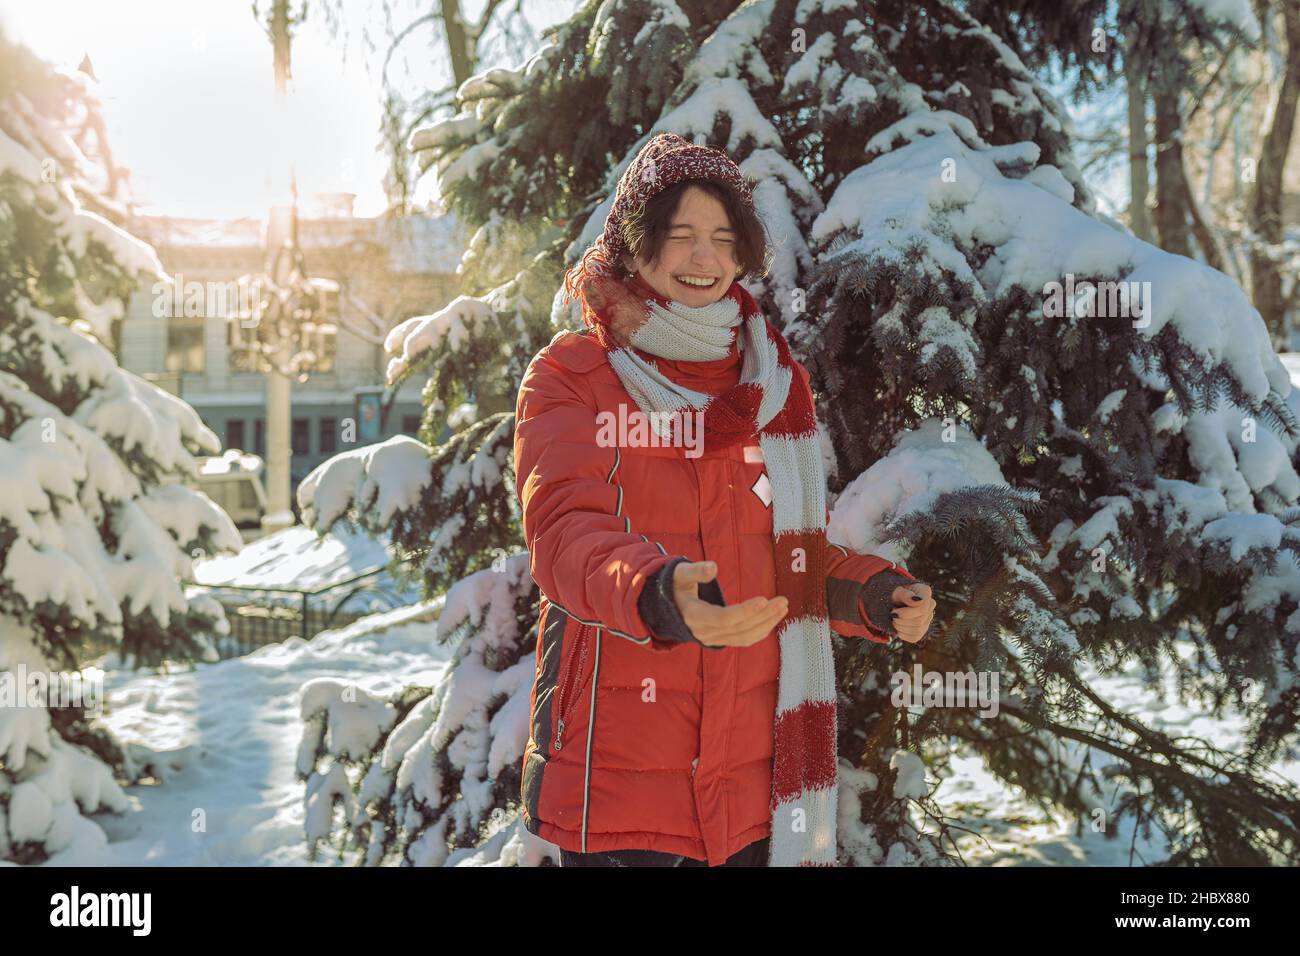 Fröhlich lachende Teenager-Mädchen im Winter warme Kleidung wirft Schnee und spielt im Winter Park bei sonnigem frostigen Wetter Stockfoto